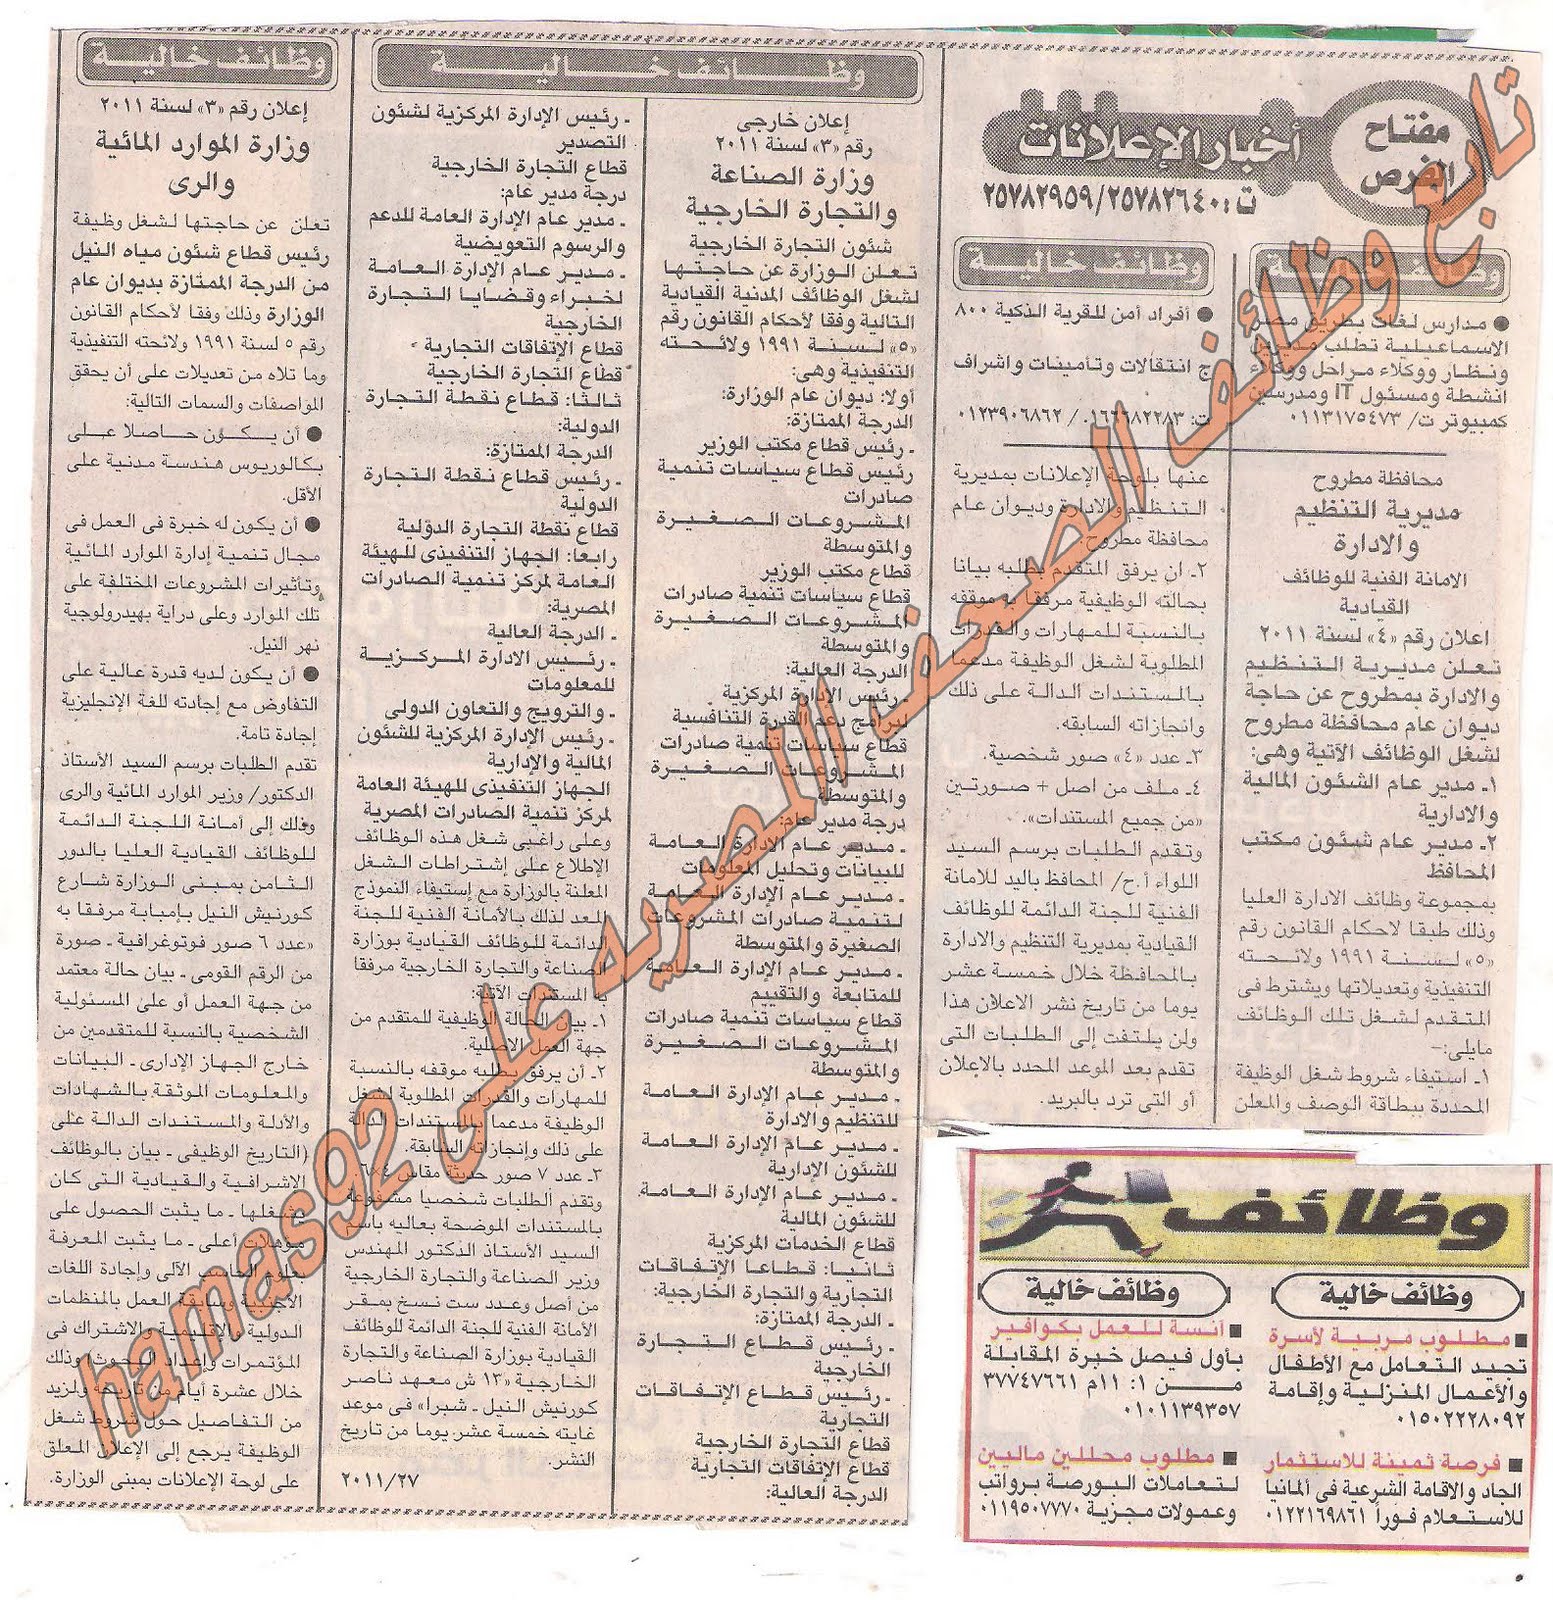 وظائف خالية من جريدة اخبار اليوم السبت 20/8/2011 Picture+001